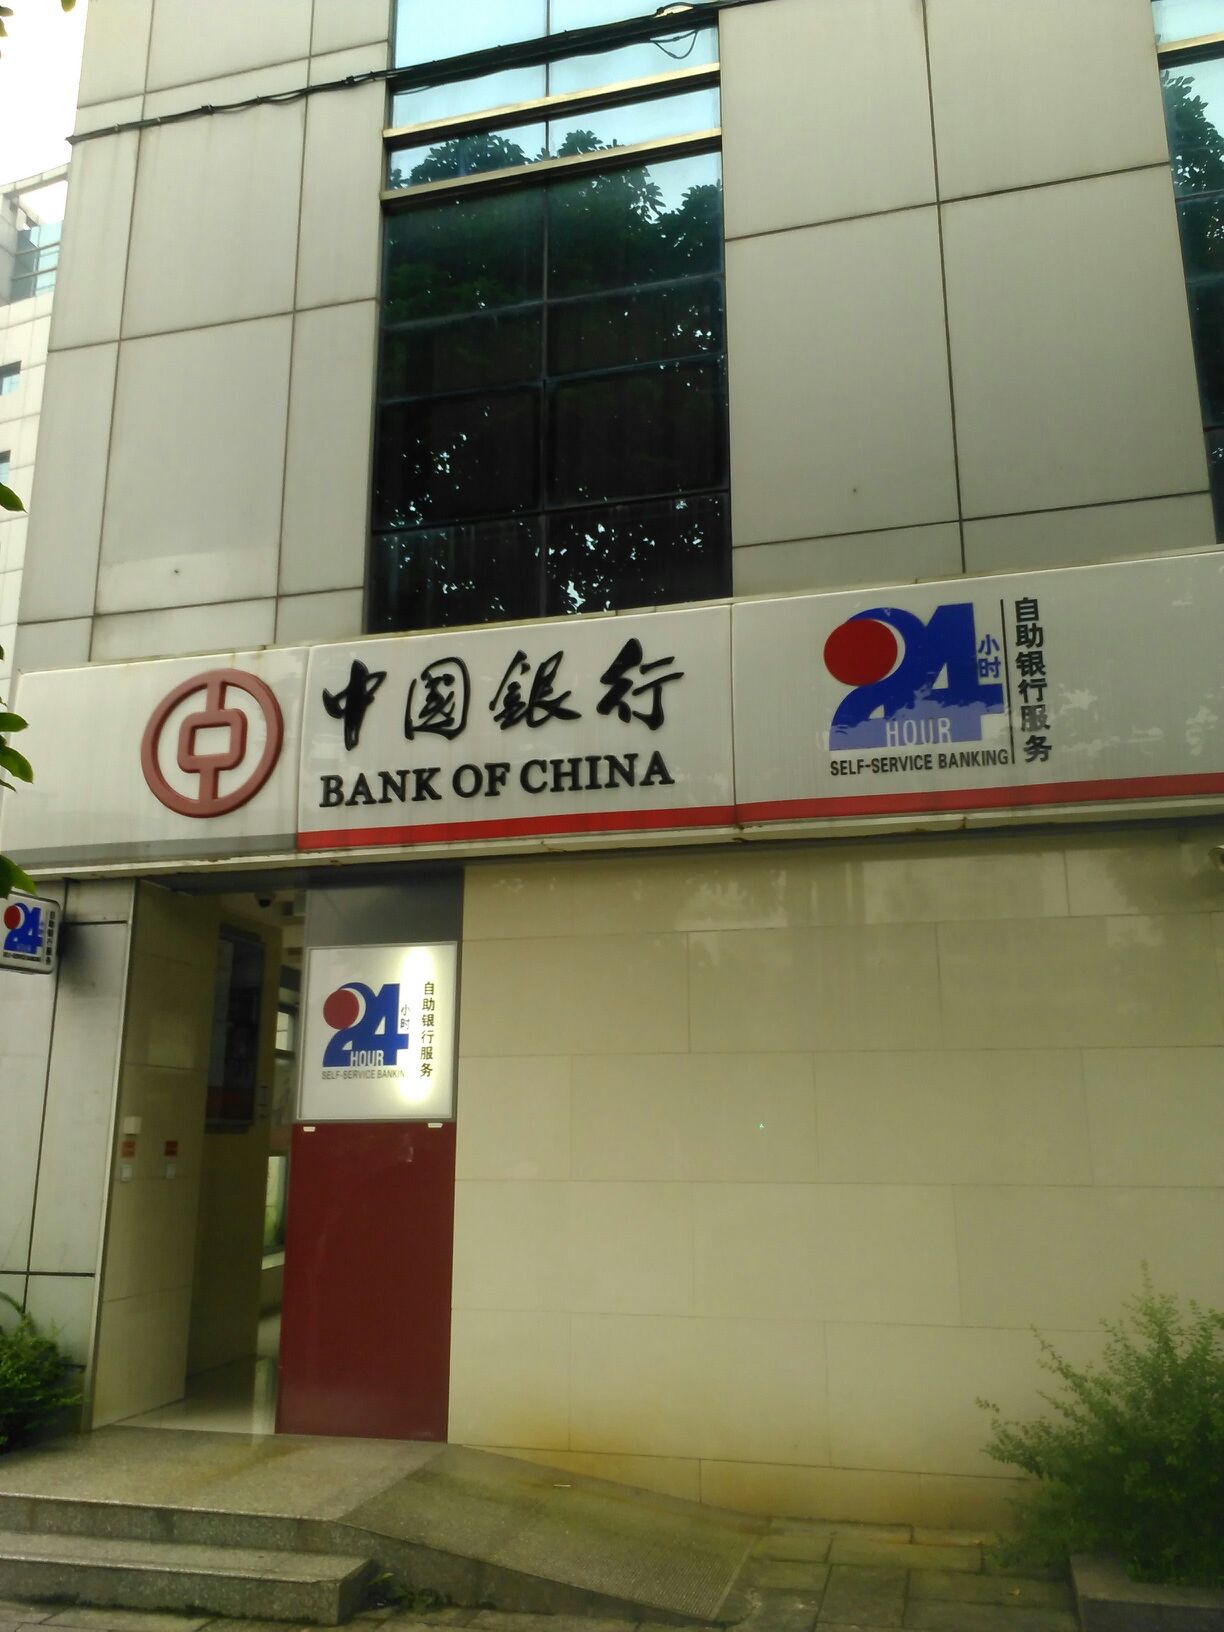 中國銀行24小時自助銀行(瀘縣支行)